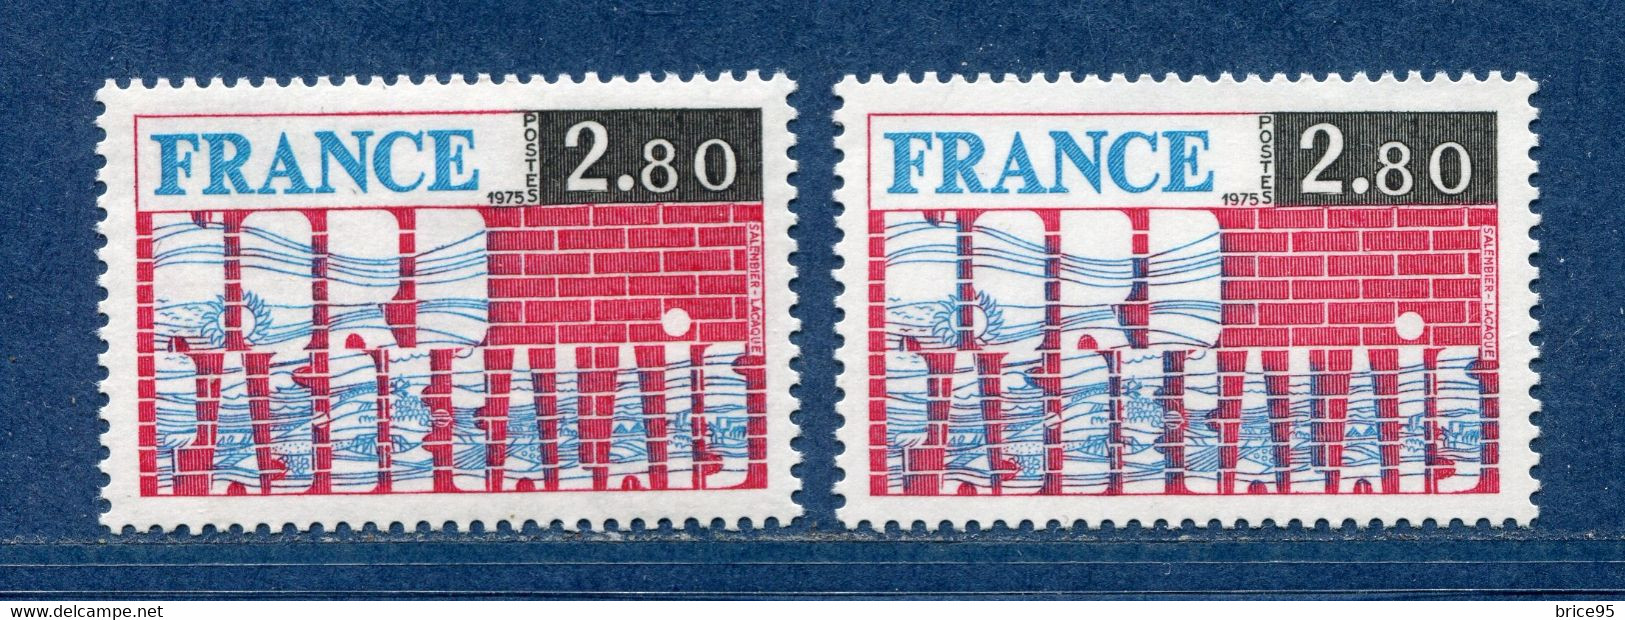 ⭐ France - Variété - YT N° 1852 - Couleurs - Pétouille - Neuf Sans Charnière - 1975 ⭐ - Ongebruikt